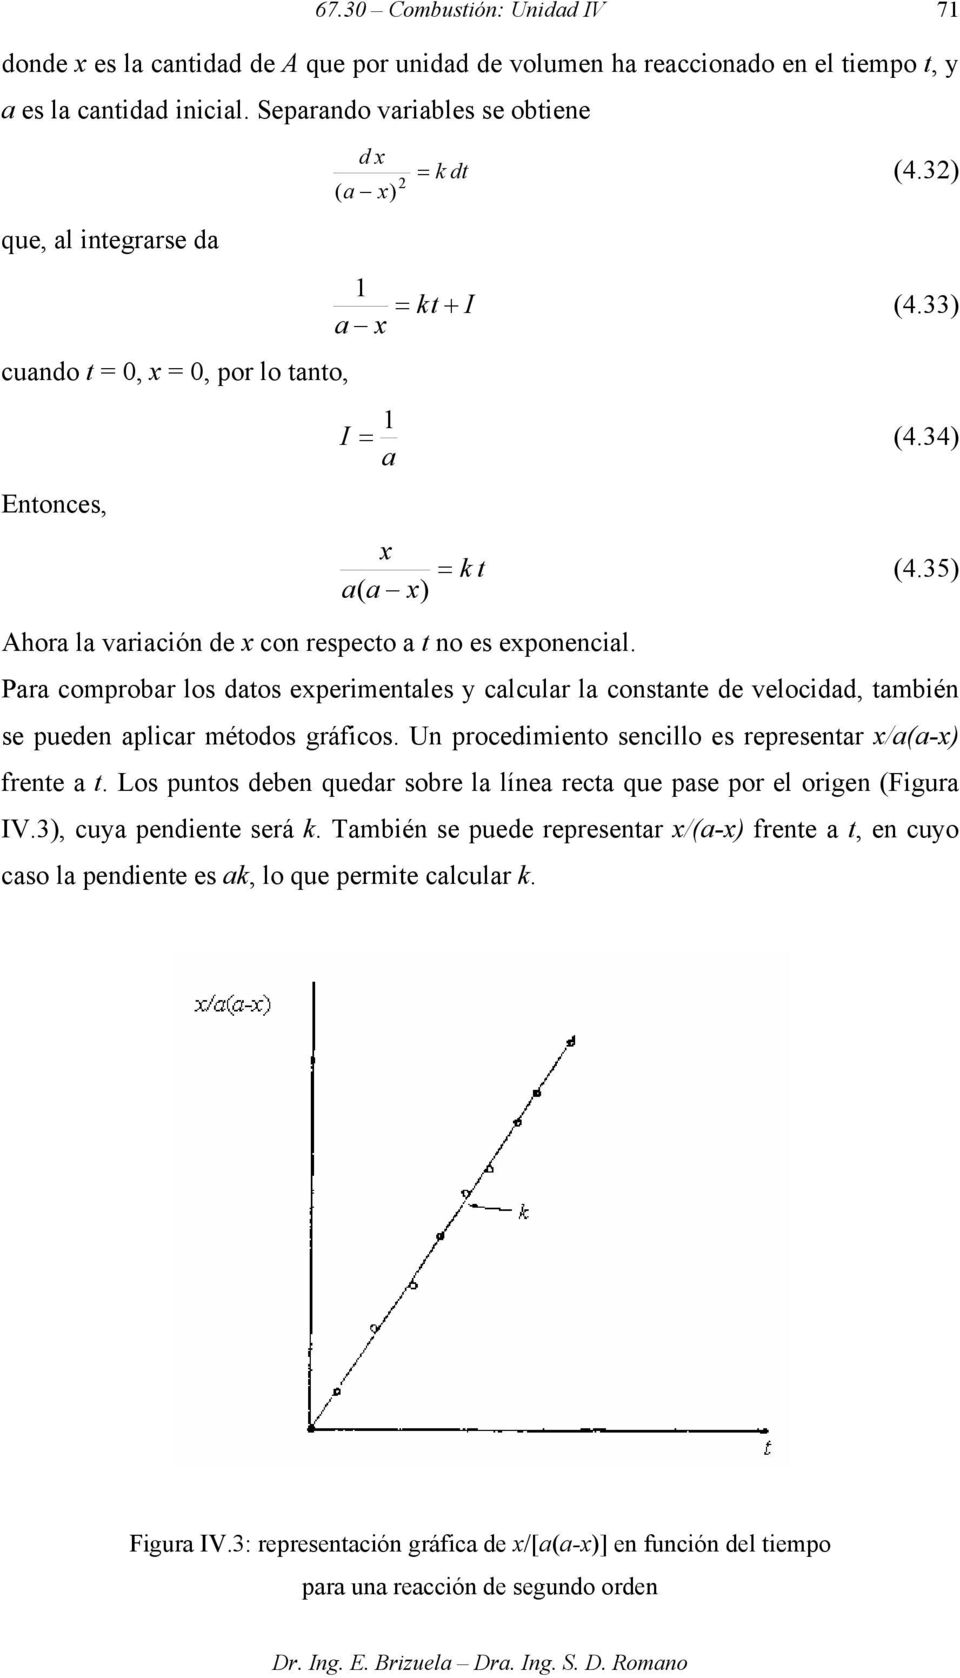 Para comprobar los datos experimentales y calcular la constante de velocidad, también se pueden aplicar métodos gráficos. Un procedimiento sencillo es representar x/a(a-x) frente a t.